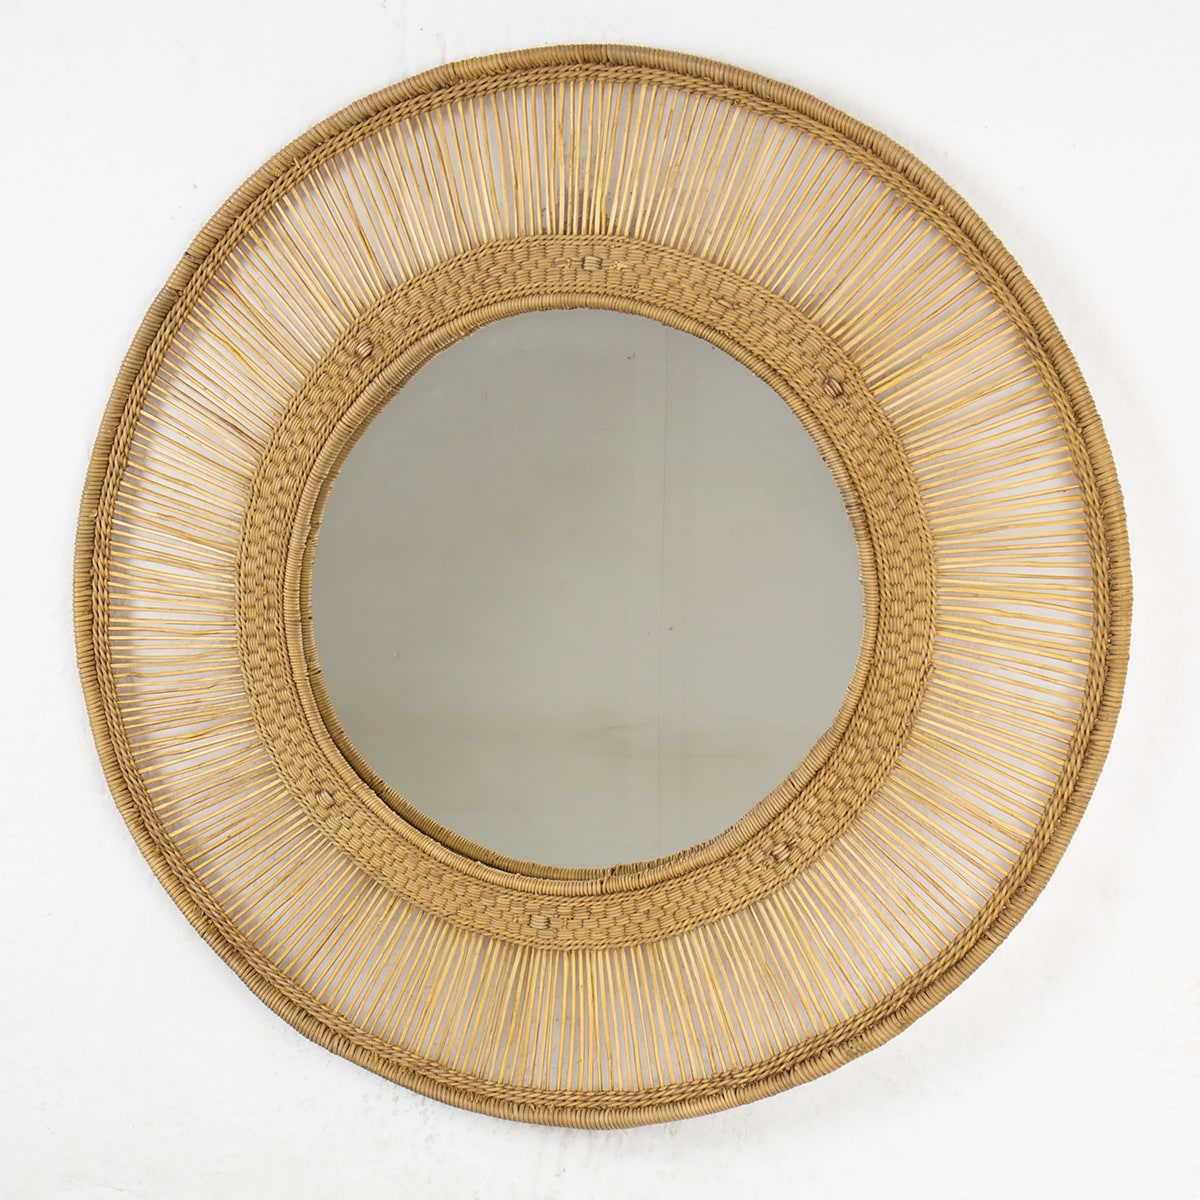 MALAWI Round mirror